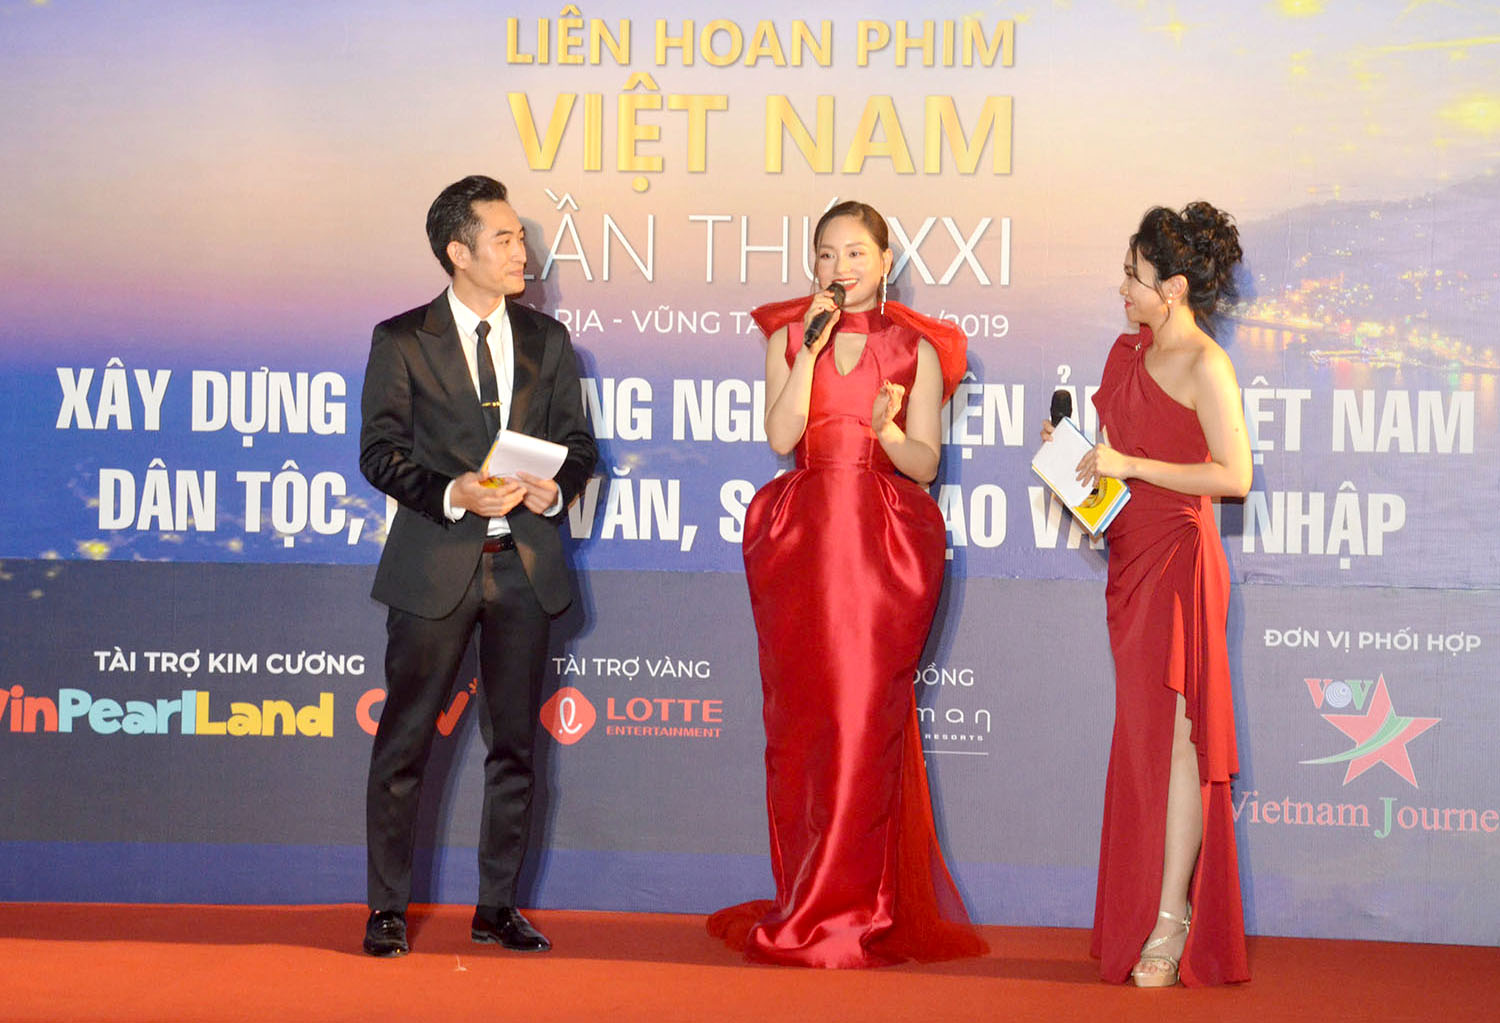 Diễn viên Lan Phương chia sẻ cảm xúc khi dự Liên hoan phim tại Bà Rịa-Vũng Tàu, nơi cô từng có 8 năm tuổi thơ gắn bó.